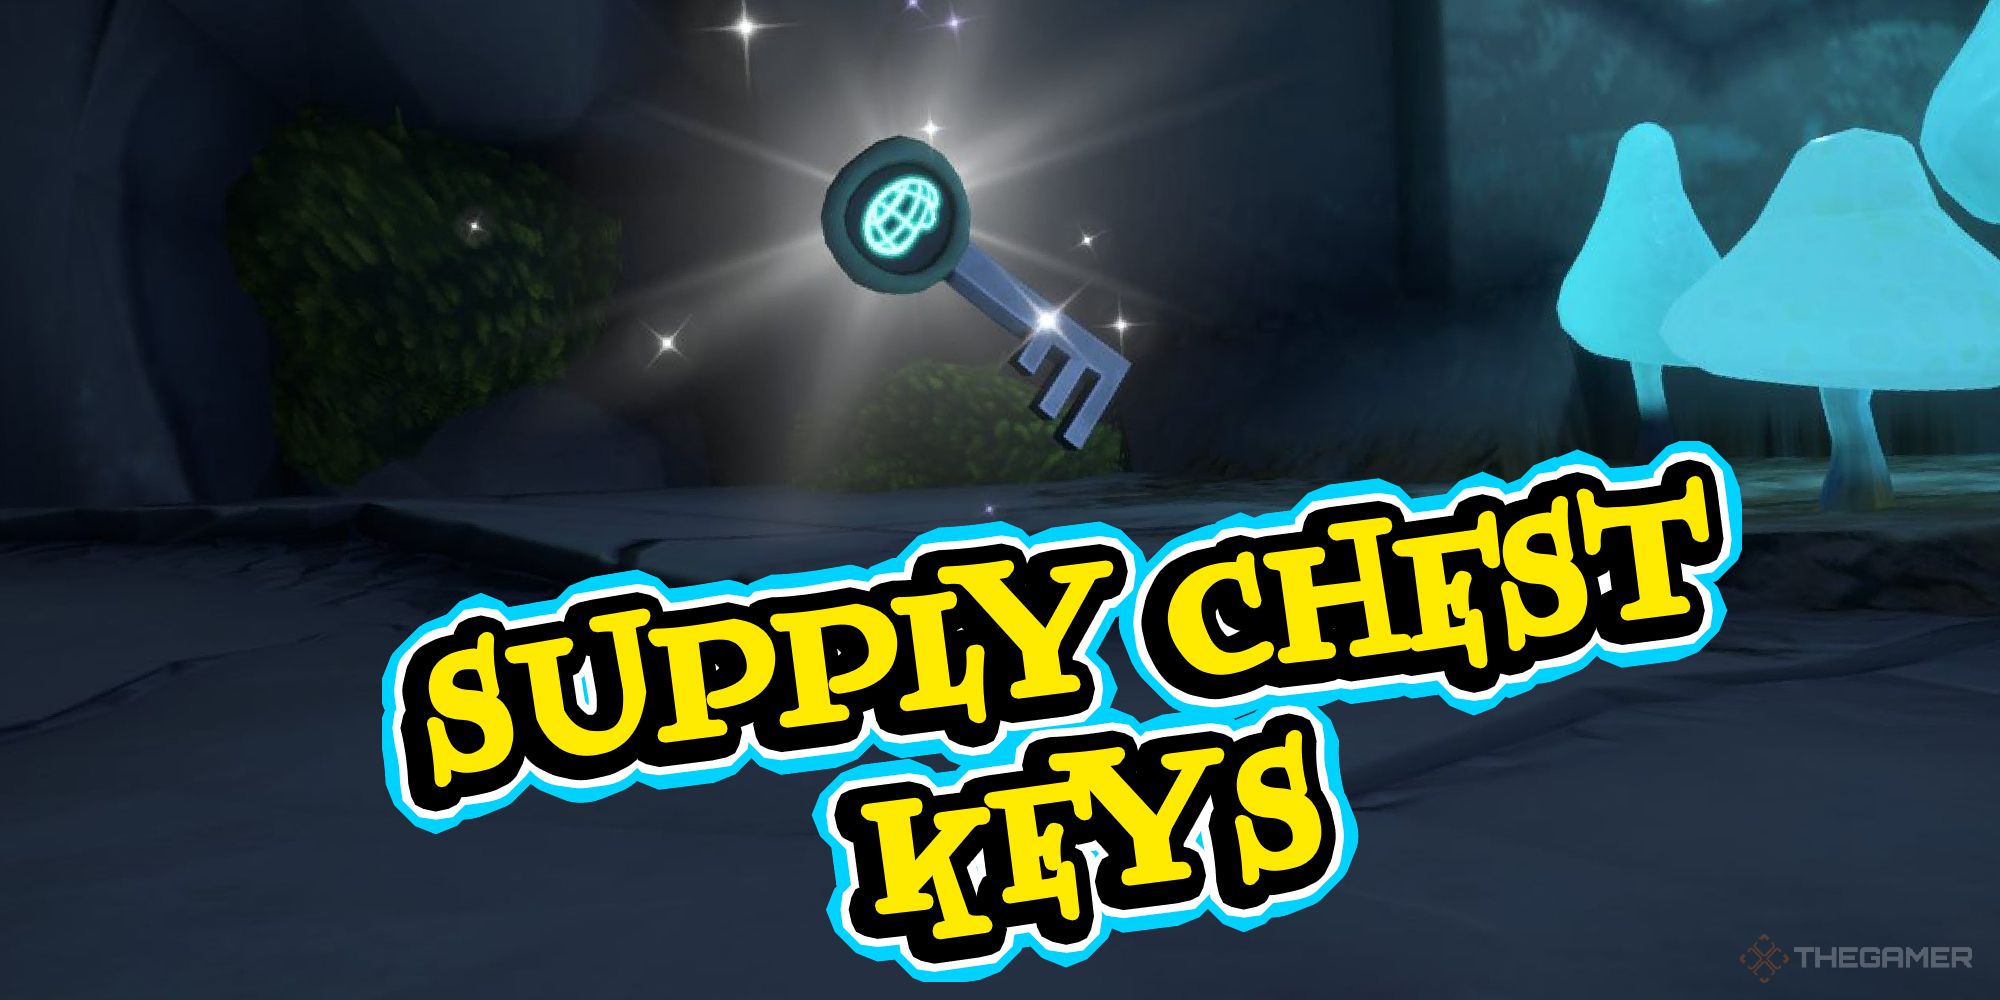 Supply-Chest-Keys-1